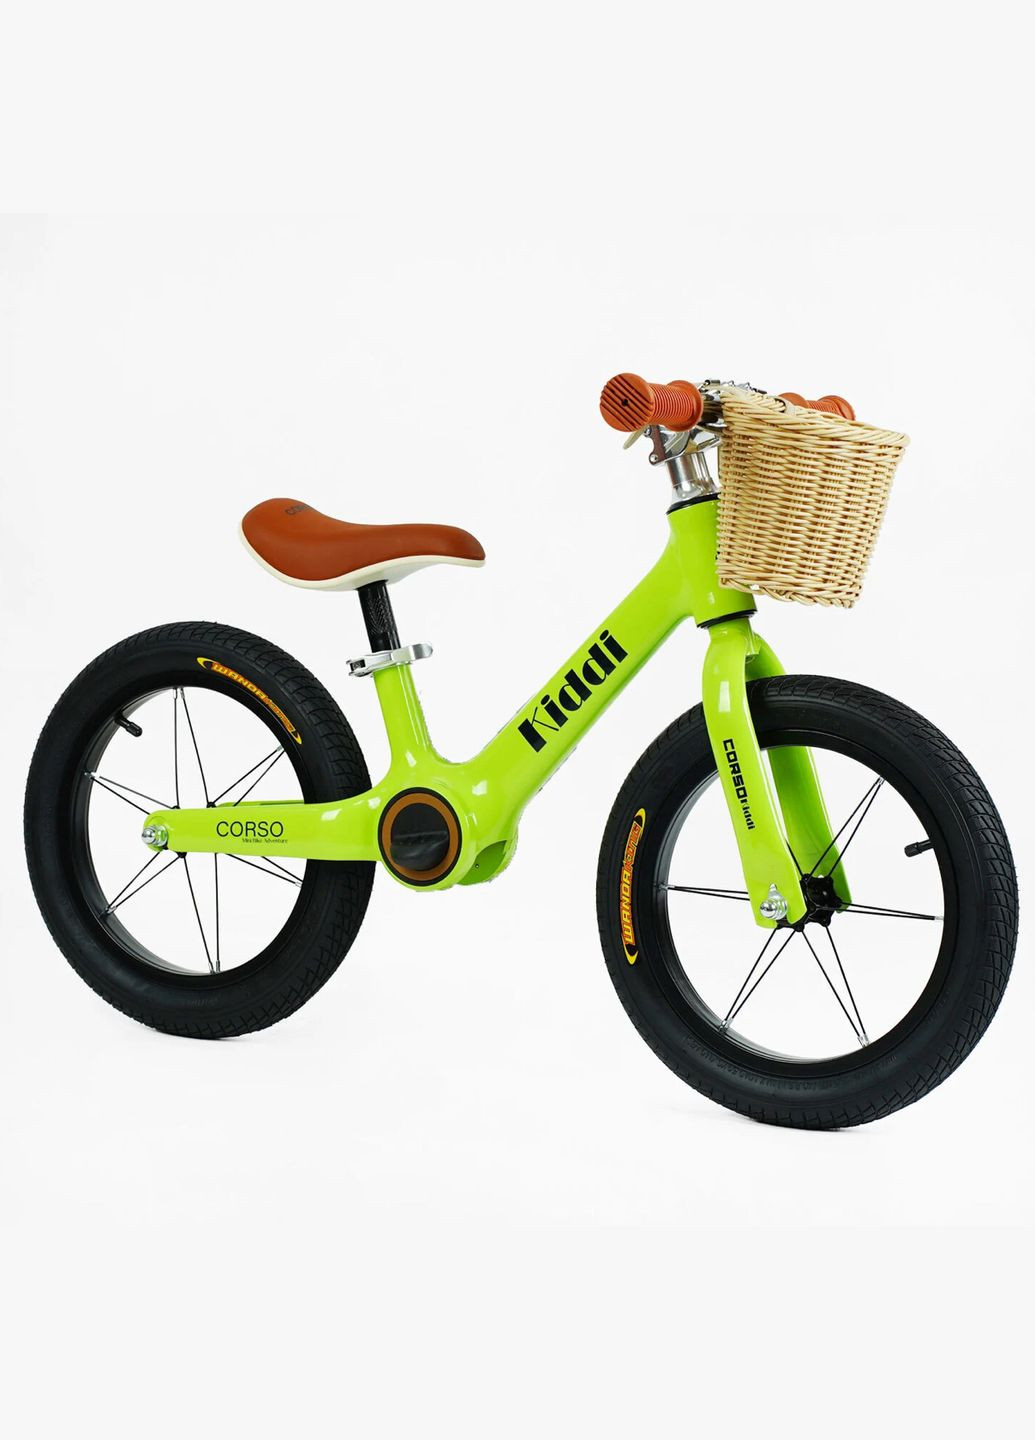 Дитячий велобіг KIDDI LT-14127. Магнієва рама, надувні колеса 14", підставка для ніг, кошик Corso (290254825)